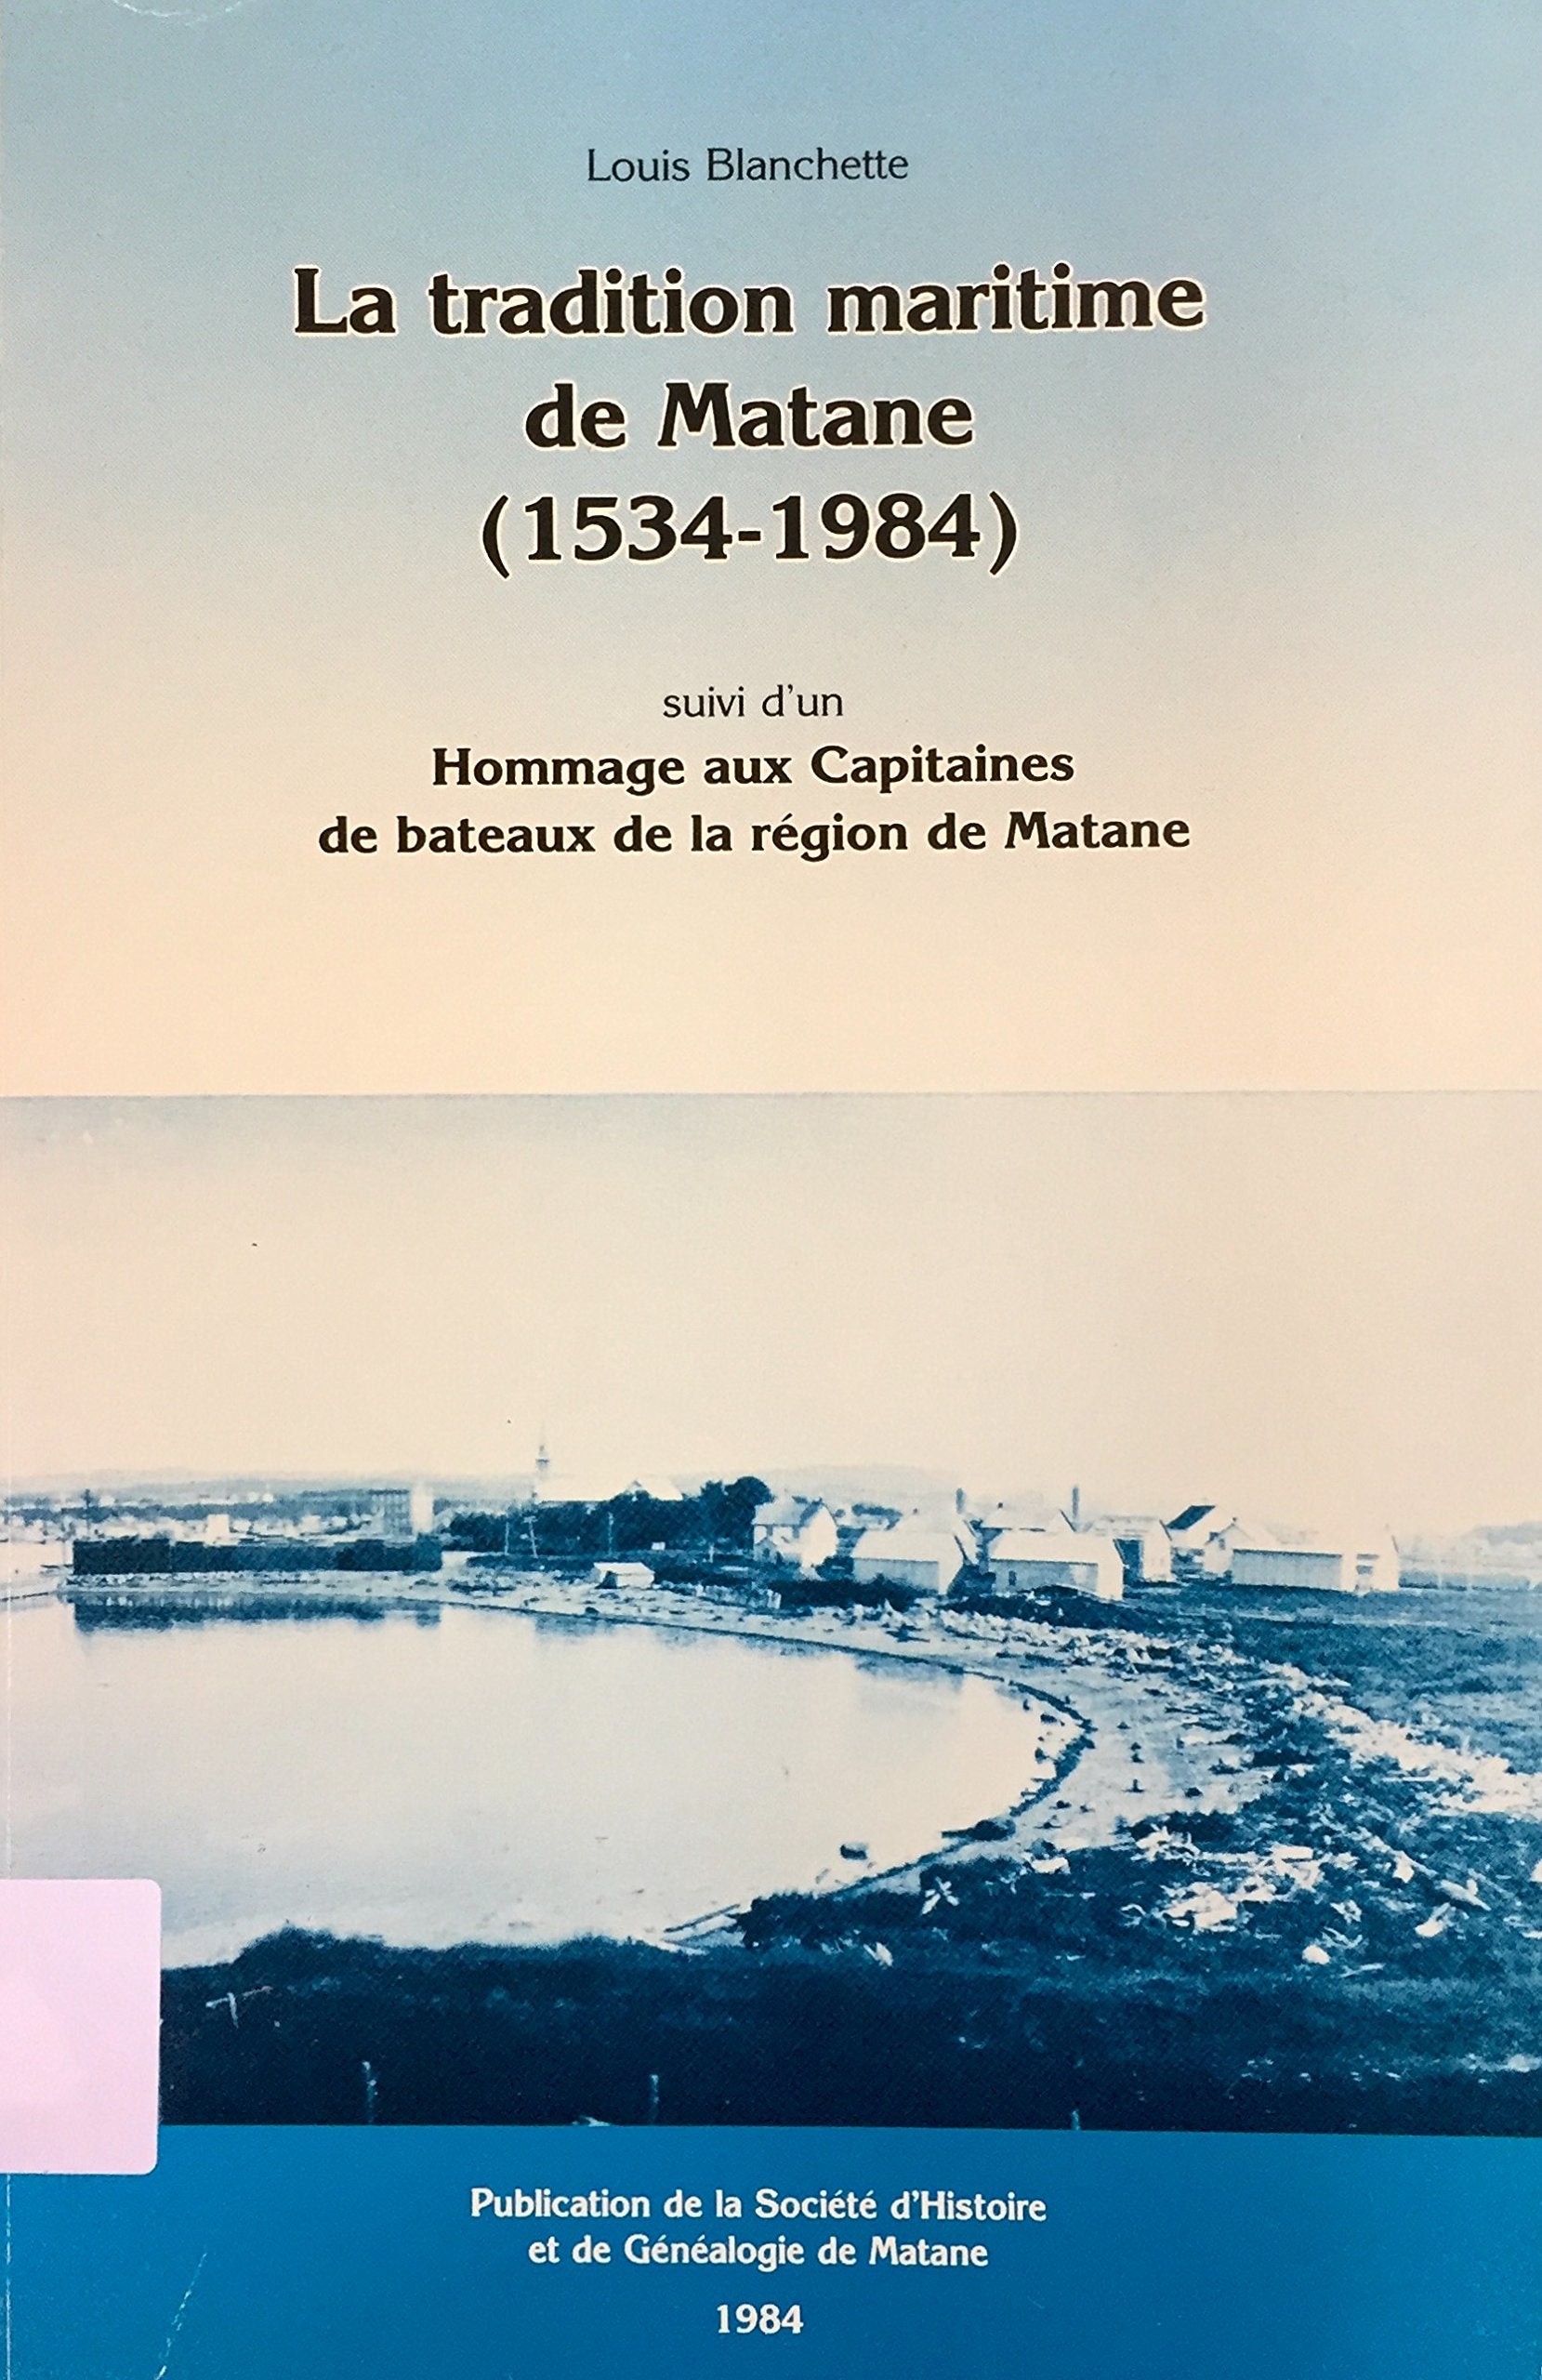 Livre ISBN 2920661000 La tradition maritime de Matane (1534-1984) suivi d'un hommage aux Capitaines de bateaux de la région de Matane